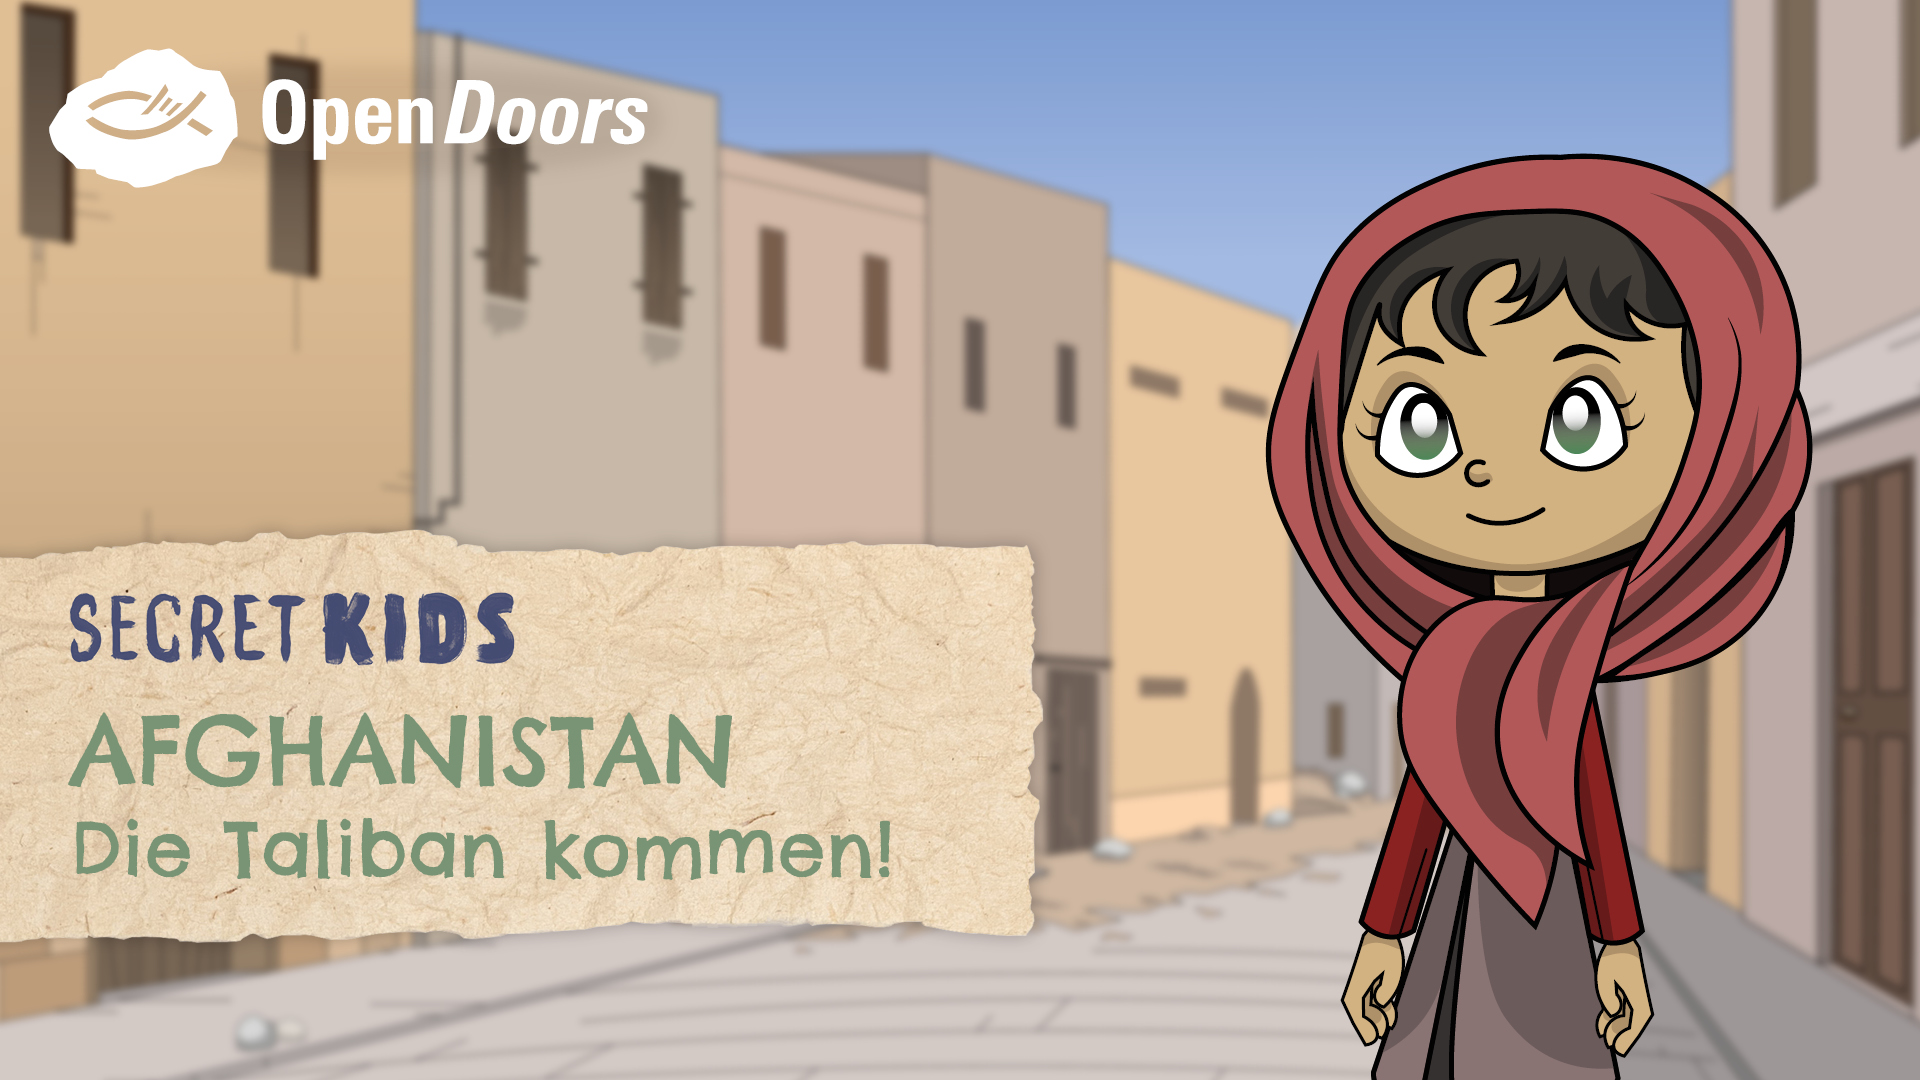 Gezeichnet: Afghanisches Mädchen vor einem unscharfen Hintergrund mit Bauchbinde mit der Aufschrift "Secret Kids - Afghanistan - Die Taliban kommen!"